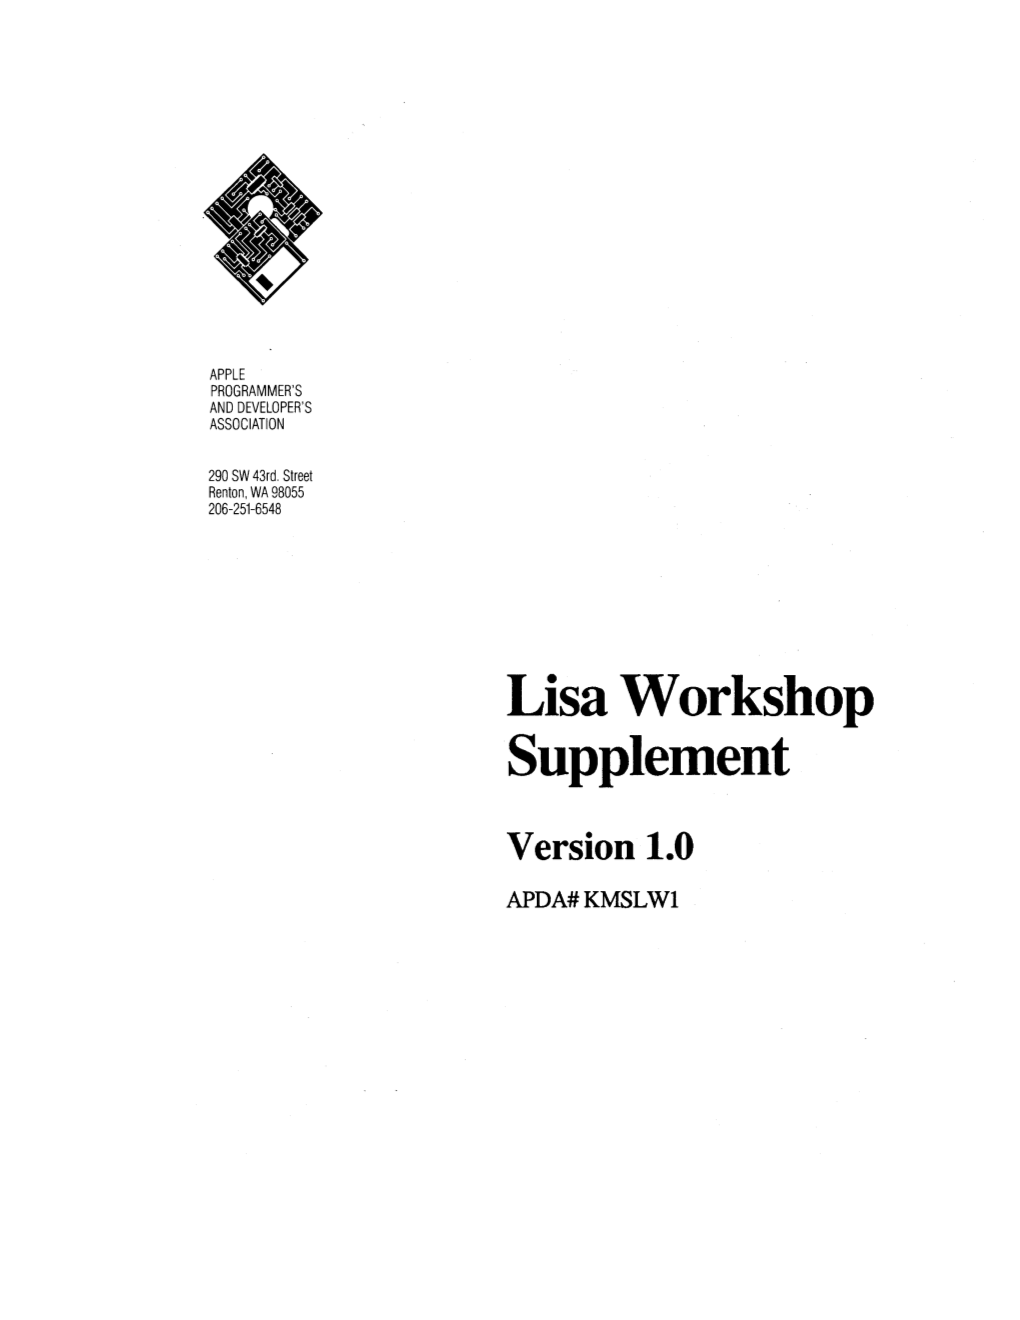 Lisa Workshop Supplement